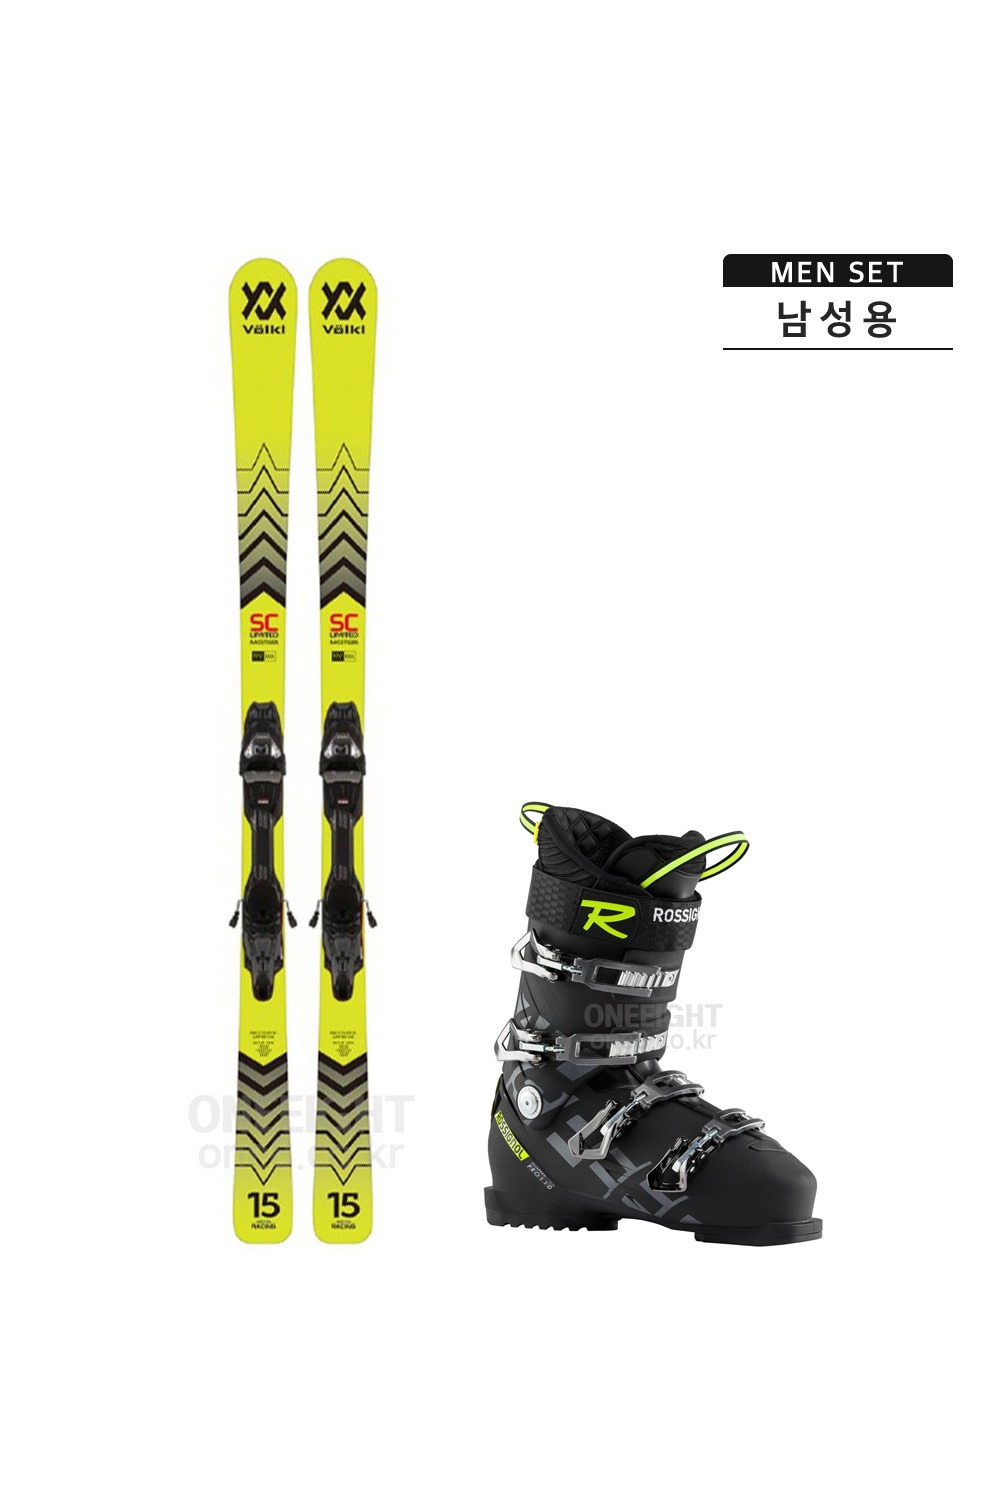 P060 뵐클 남성 스키 세트